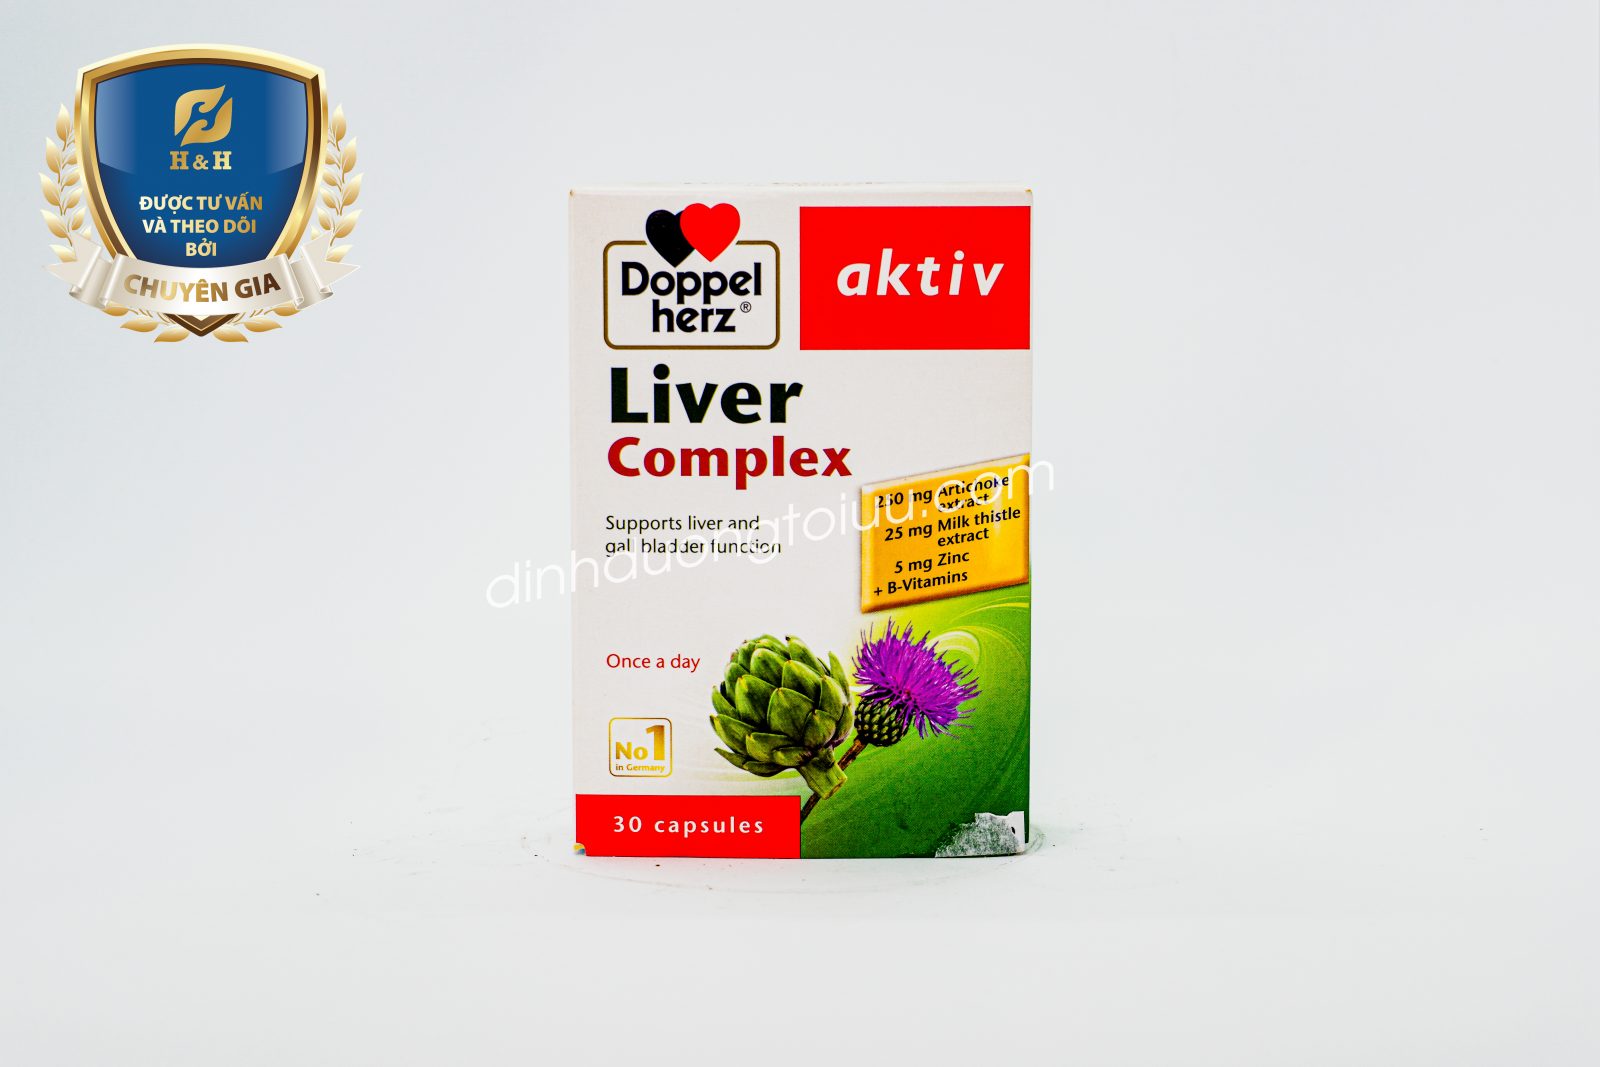 Doppelherz Aktiv Liver Complex - thực phẩm bảo vệ sức khỏe của Đức, giúp hỗ trợ chức năng gan cho cơ thể.